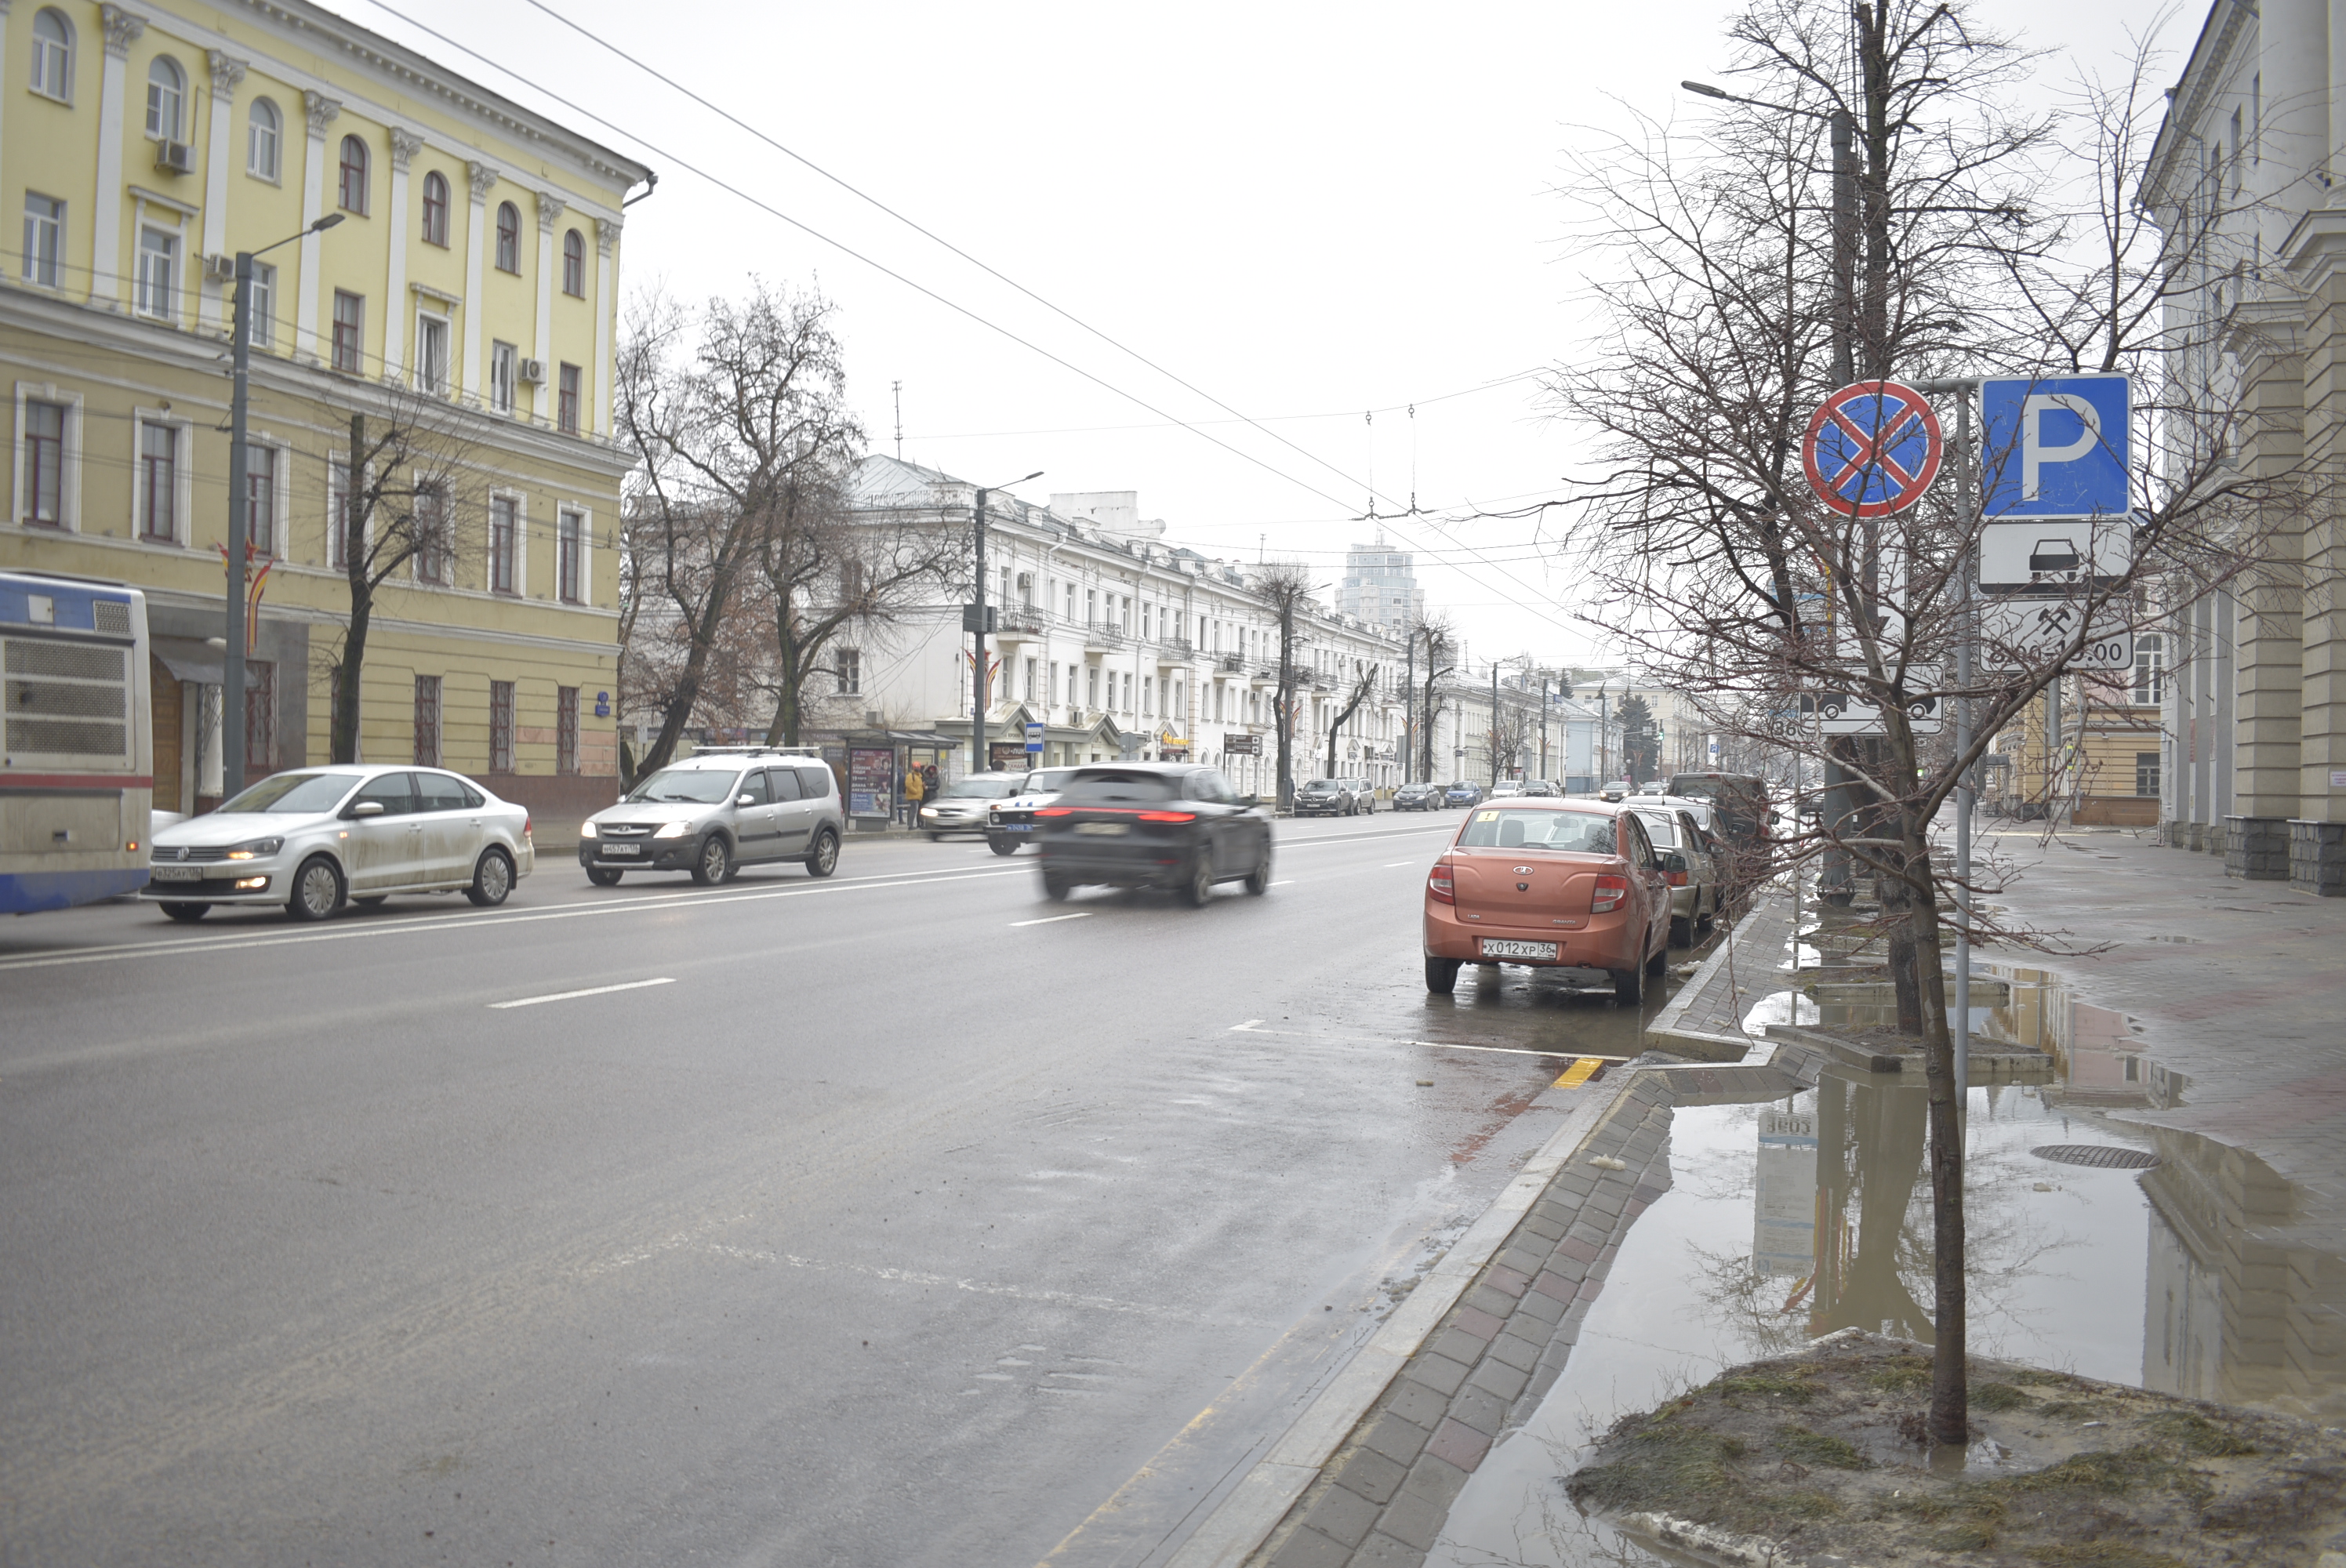 Какими методами можно решить проблему с парковками в Воронеже? - фото 7